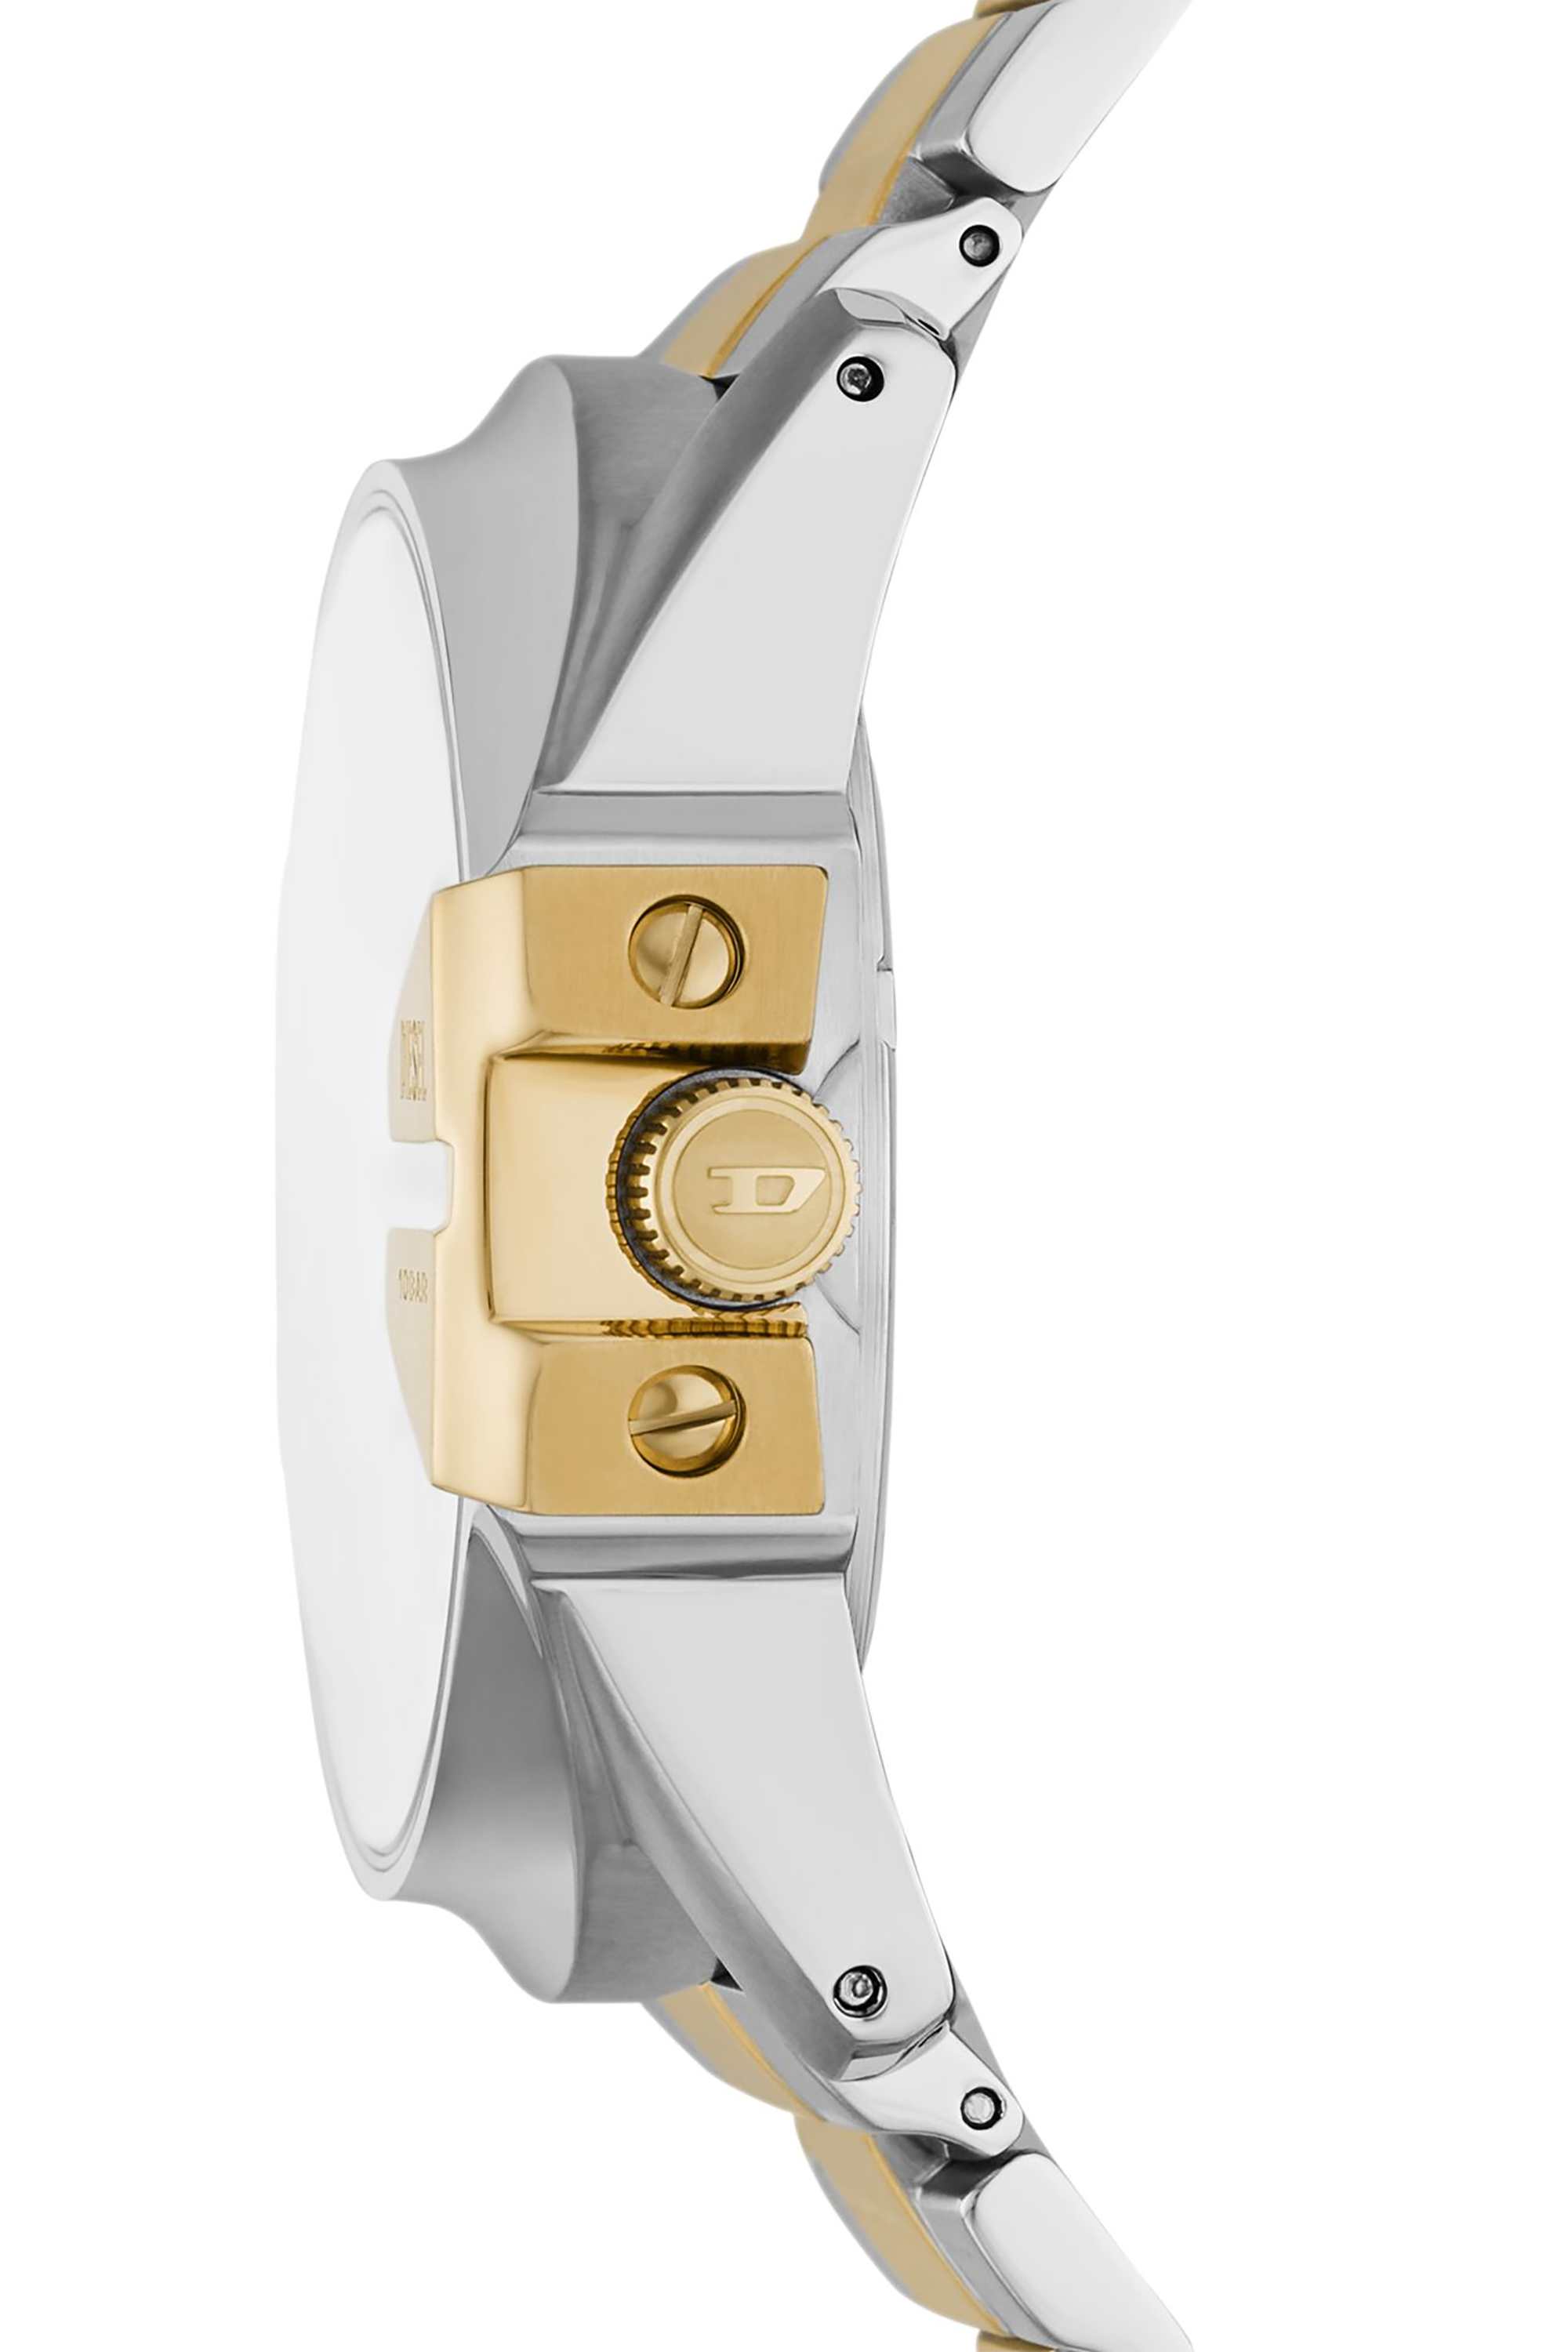 Men's Scraper black enamel and stainless steel watch | DZ2195 Diesel